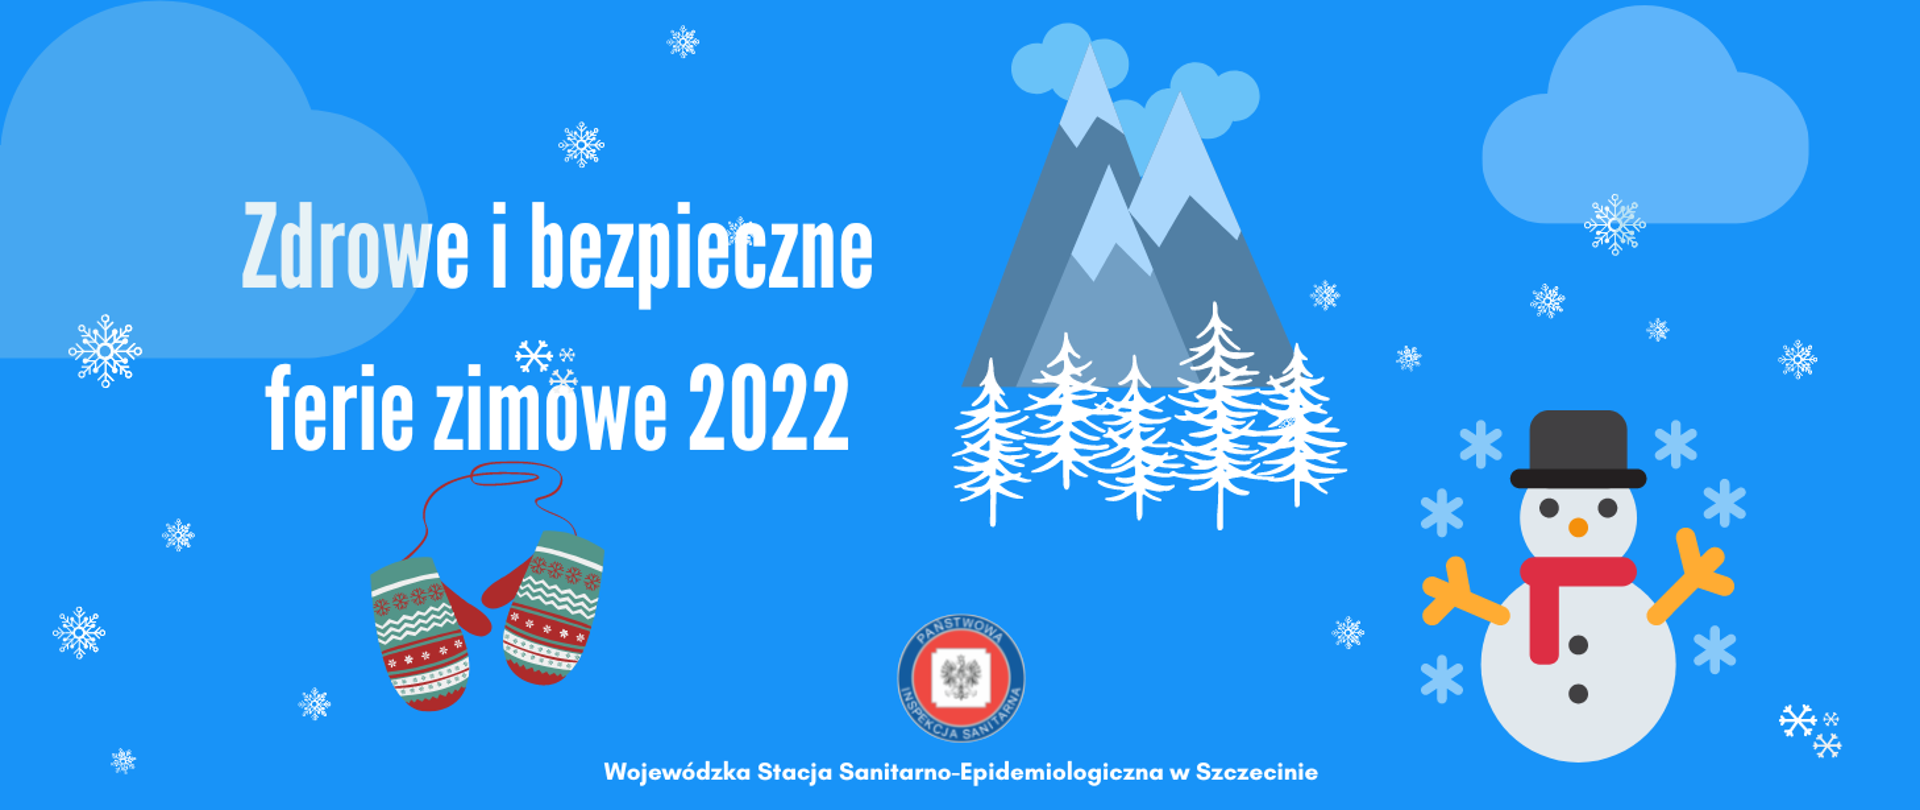 Zdrowe i bezpieczne ferie zimowe 2022 